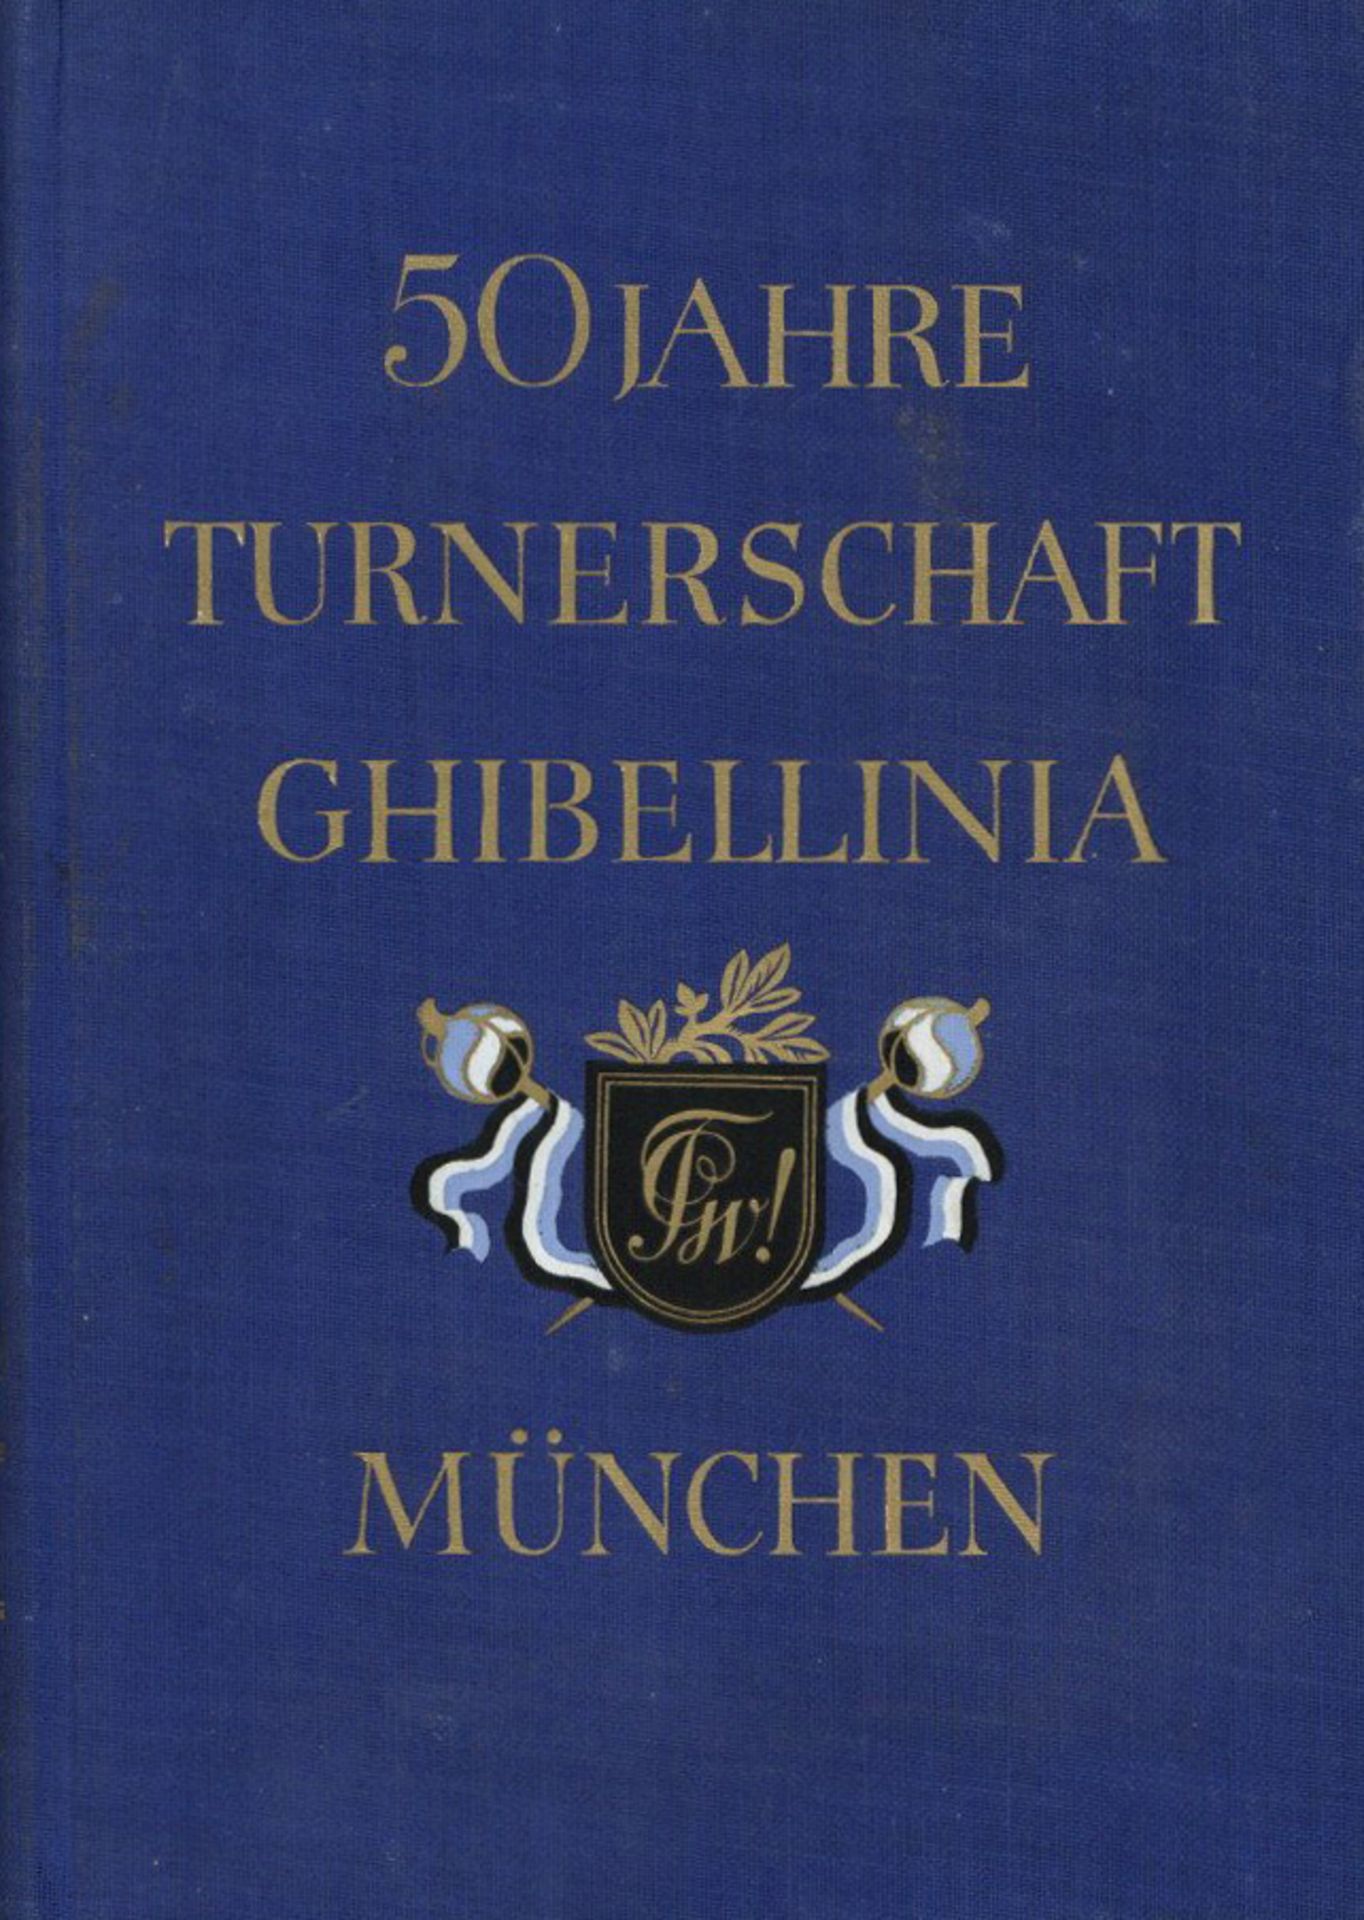 Turnen Buch 50 Jahre Turnerschaft Ghibellinia München von Woerl, J. 1934, 292 S. II